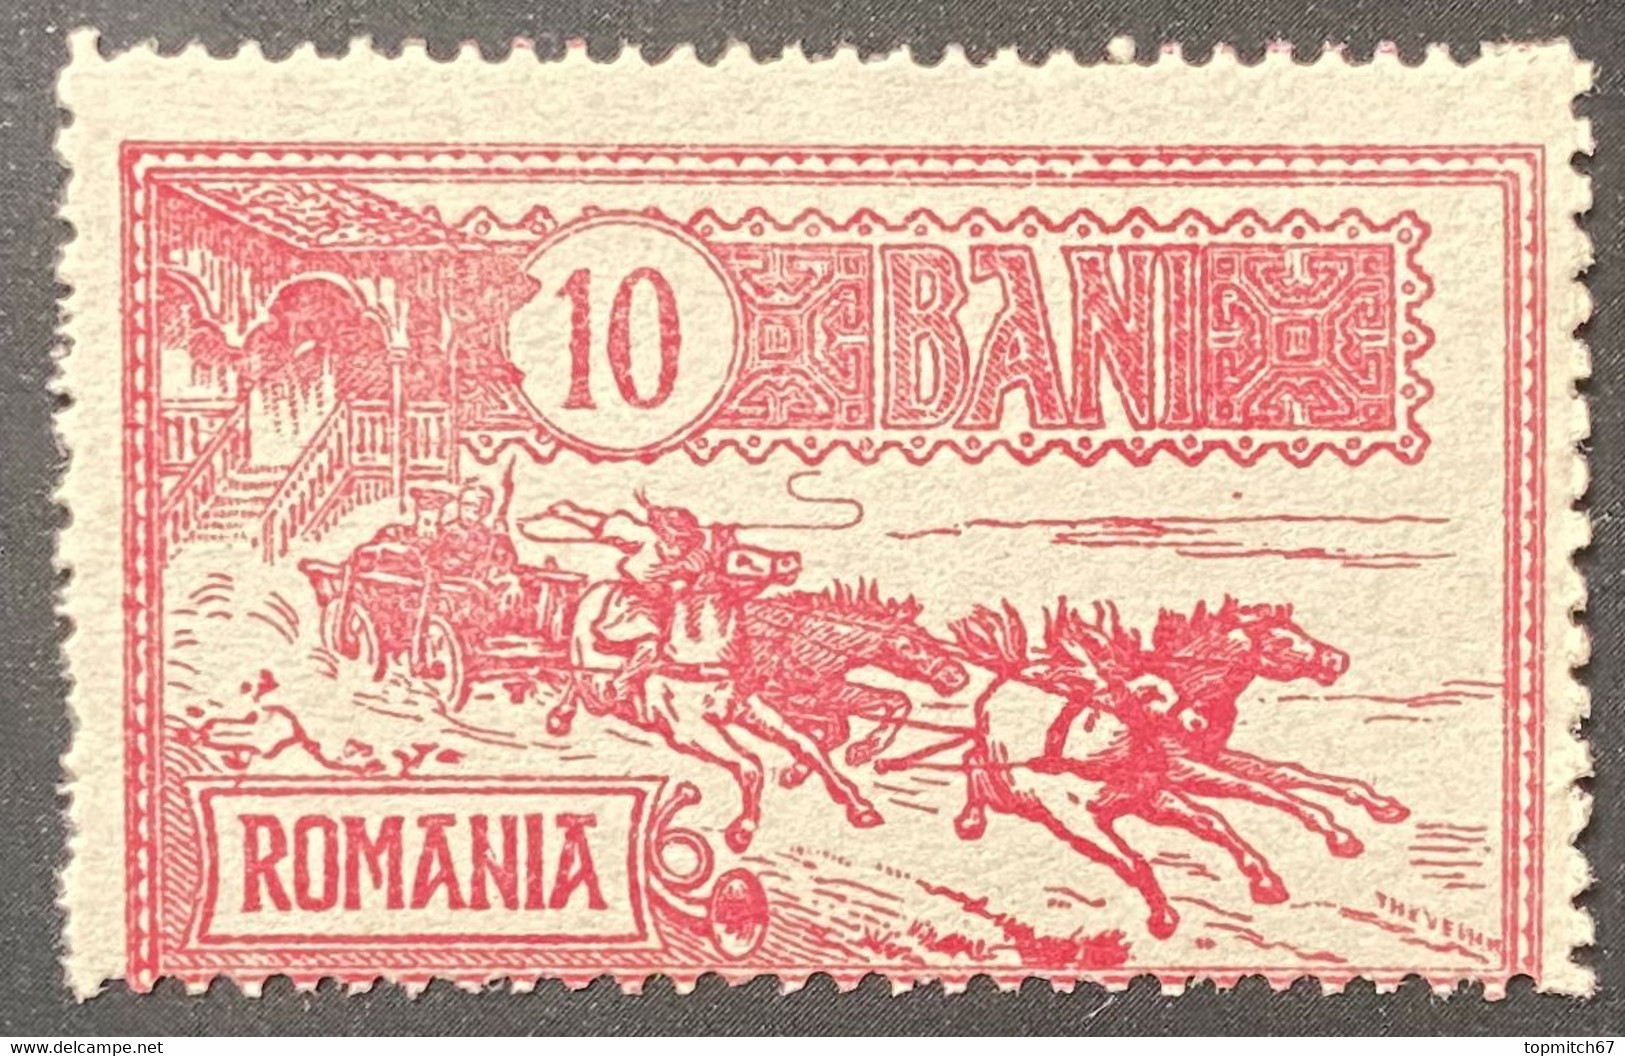 ROM0140MNH - Mail Coach - 10 Bani MNH Stamp - Romania - 1903 - Ongebruikt